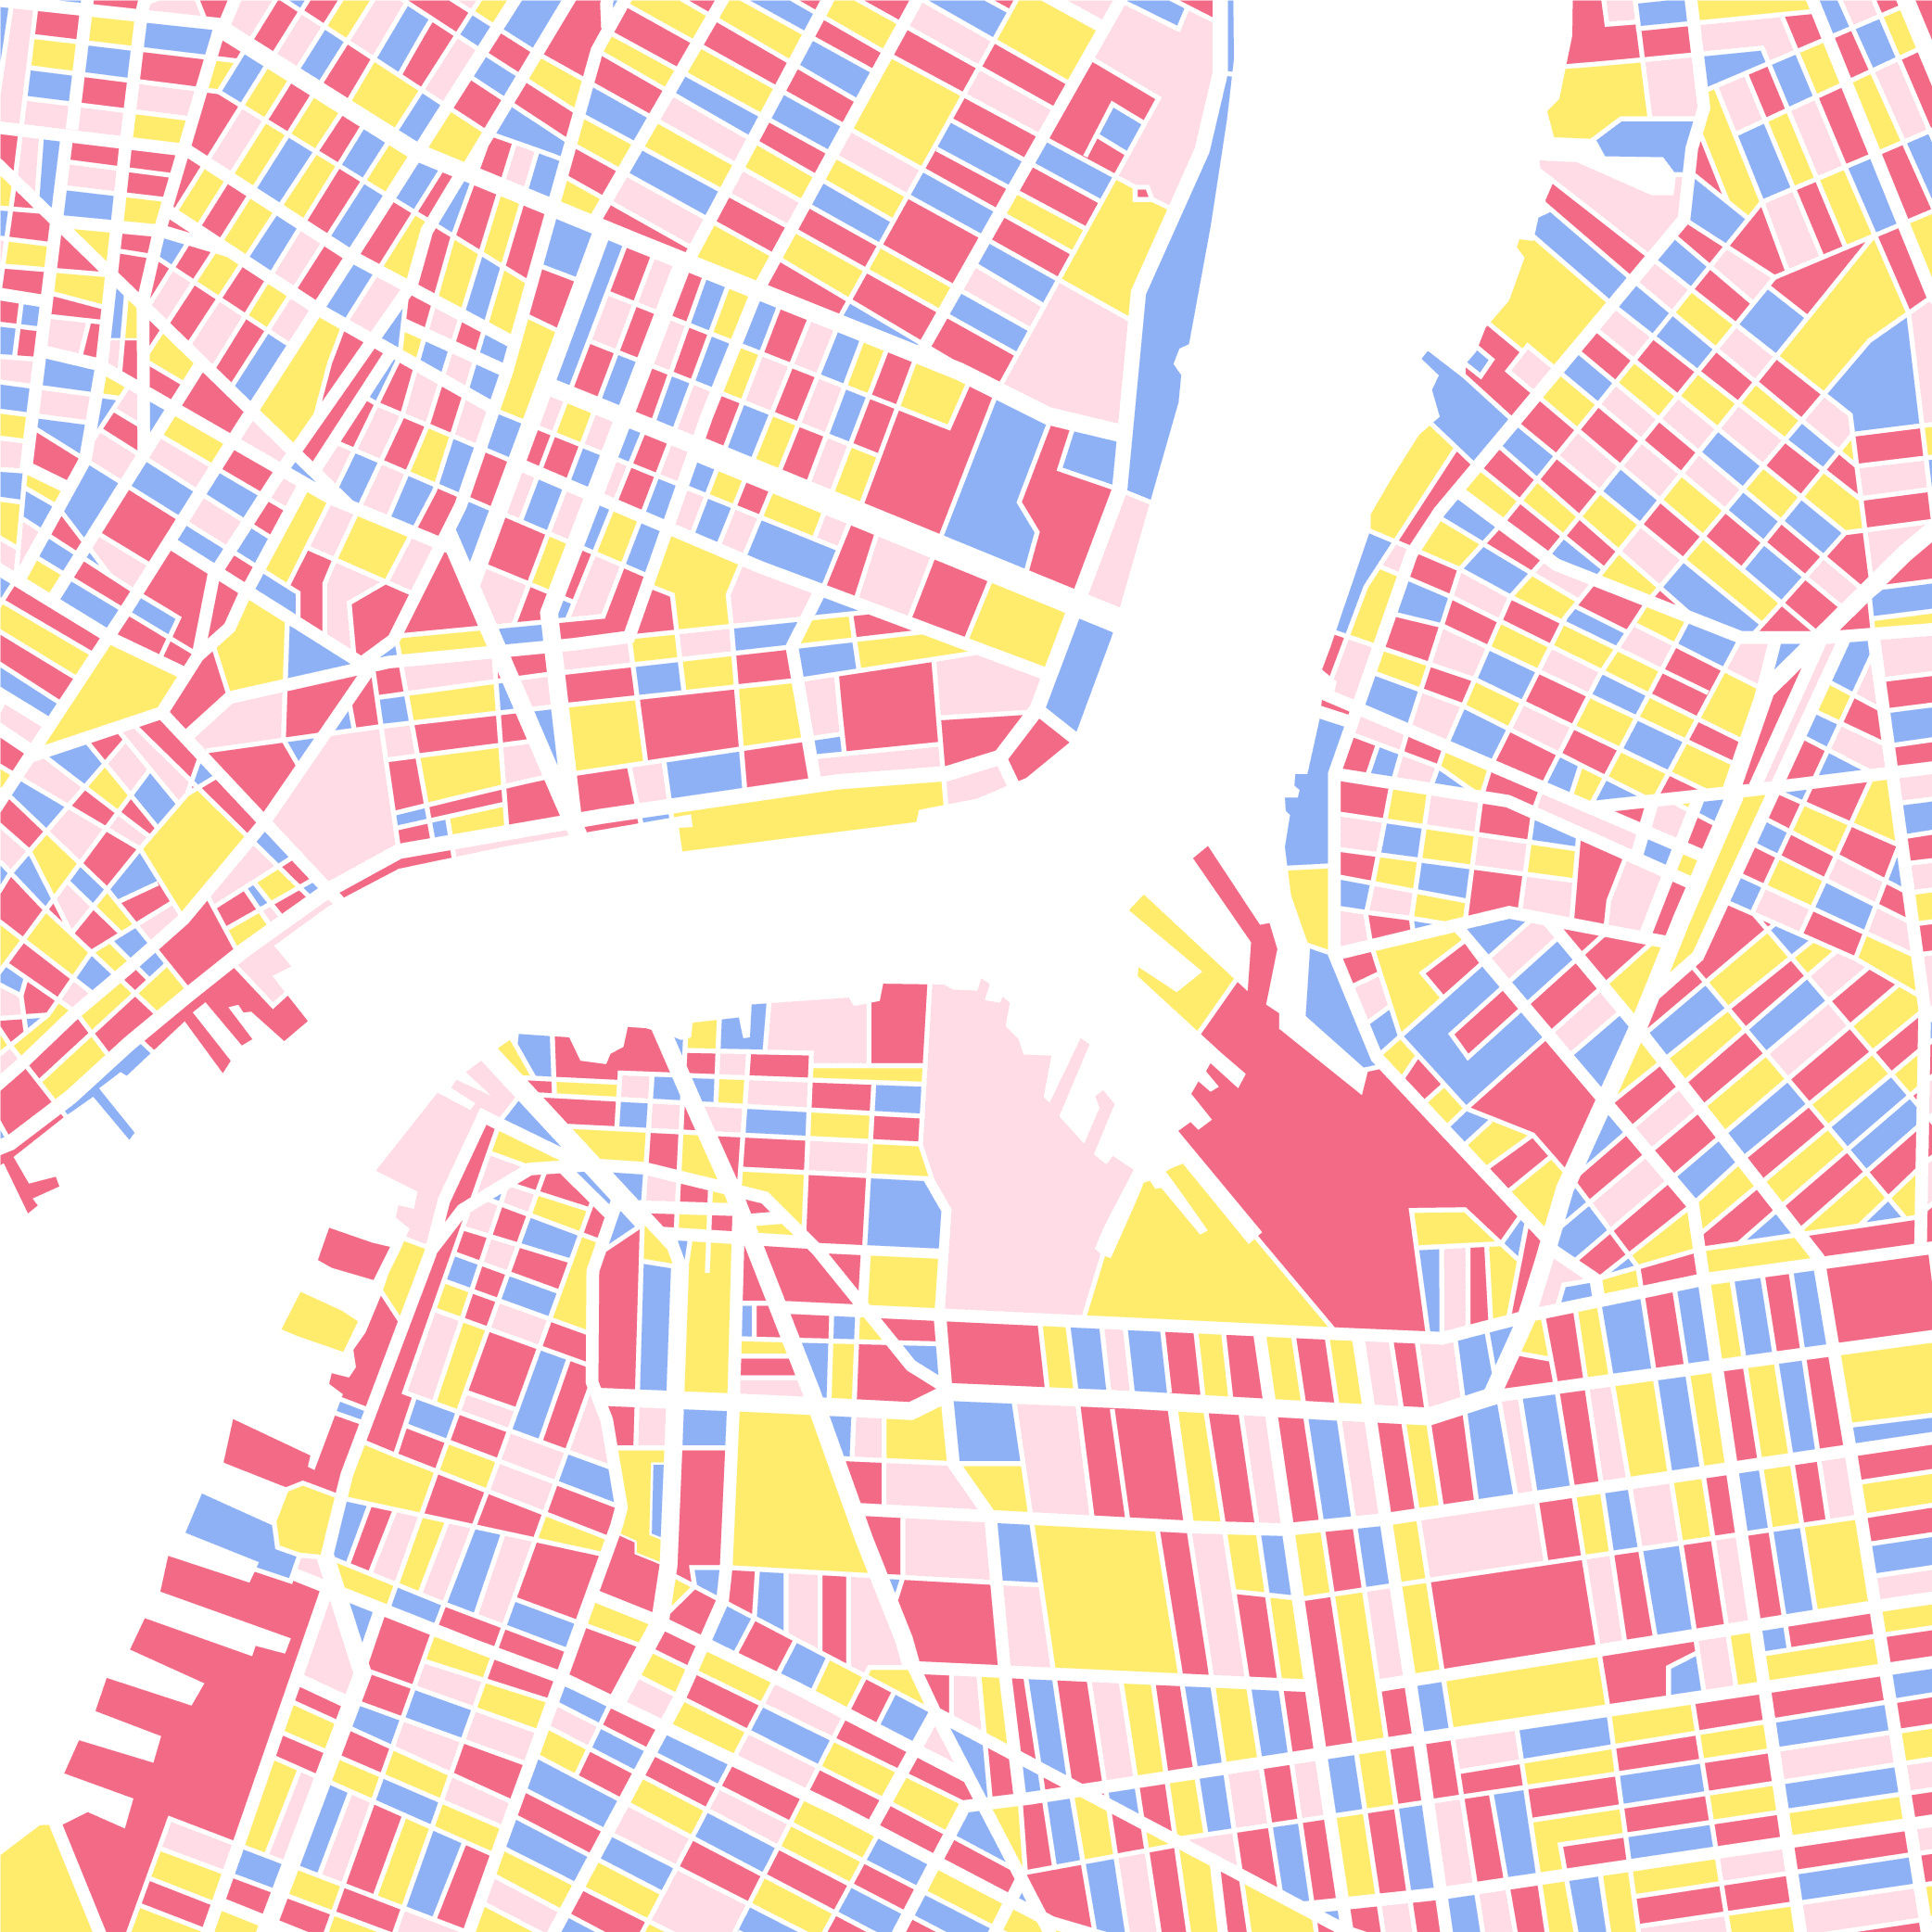 MapPalette #015 Brooklyn